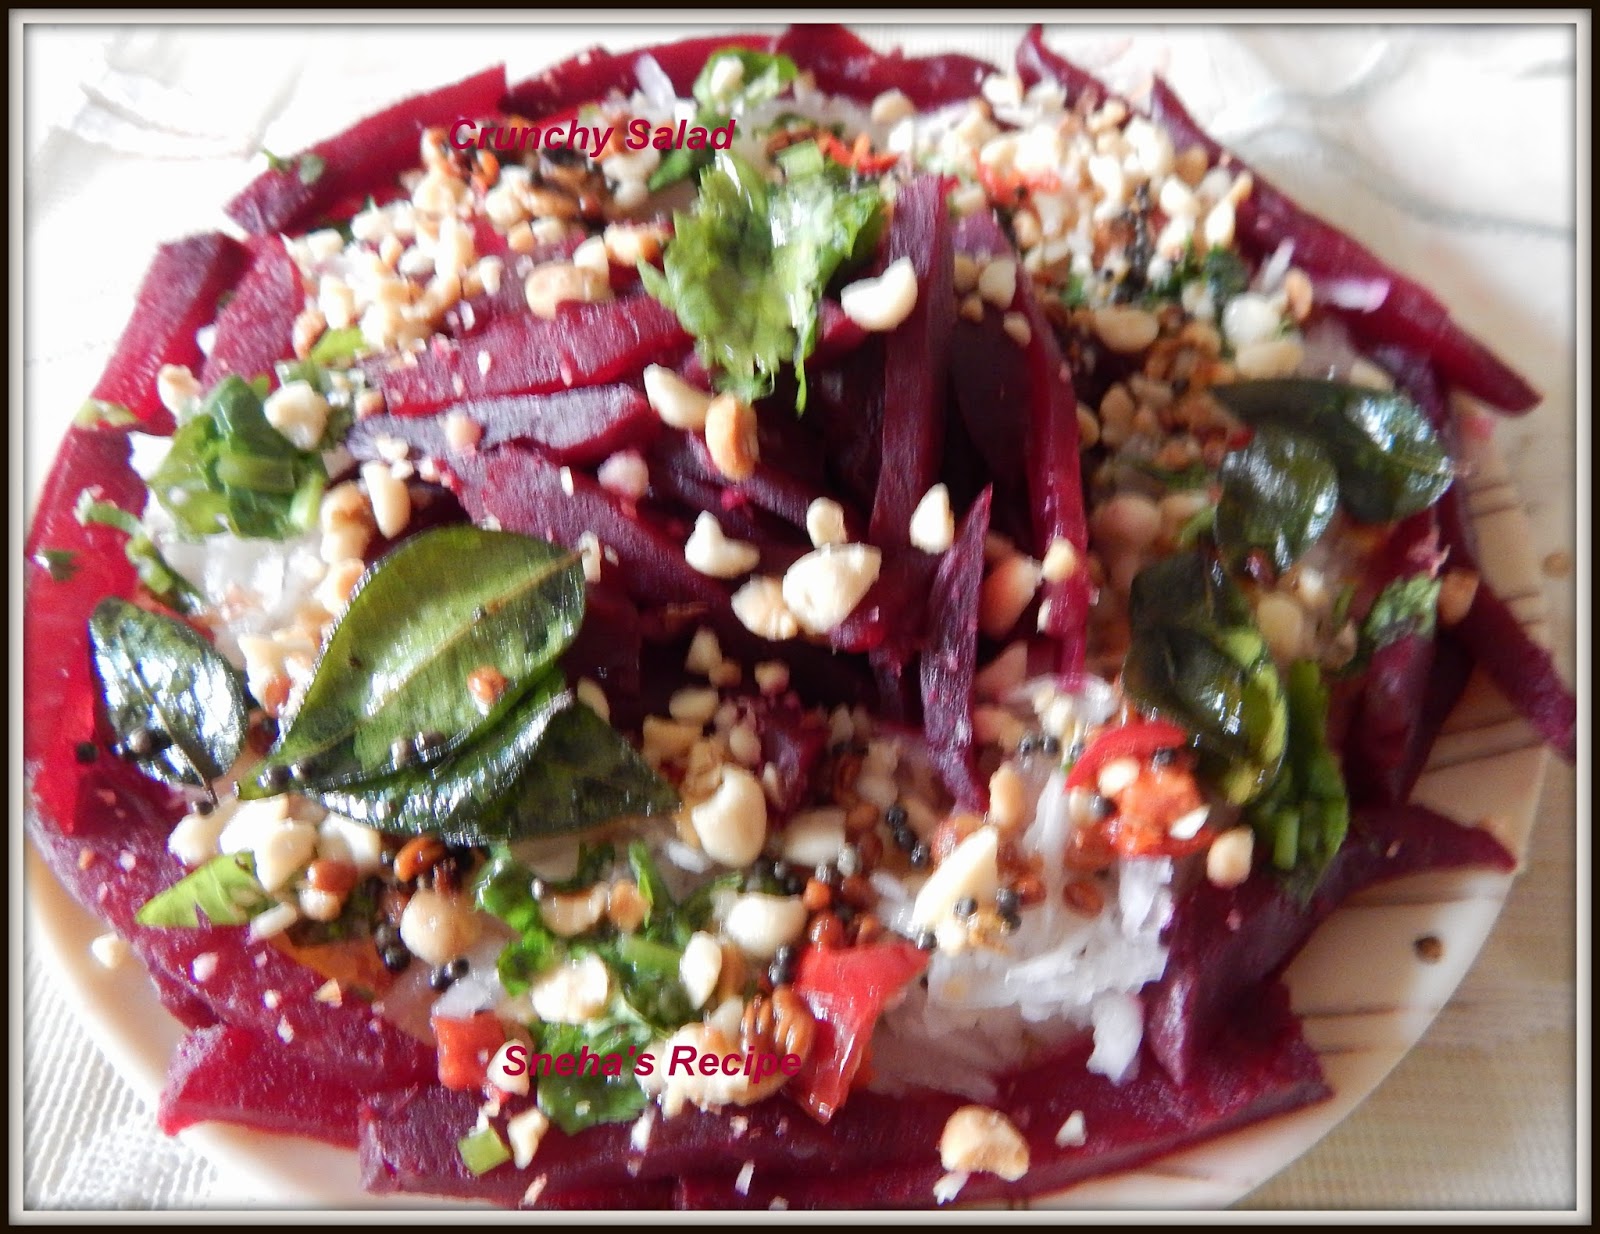 Crunchy Salad #FoodieExtravaganza - Sneha's Recipe